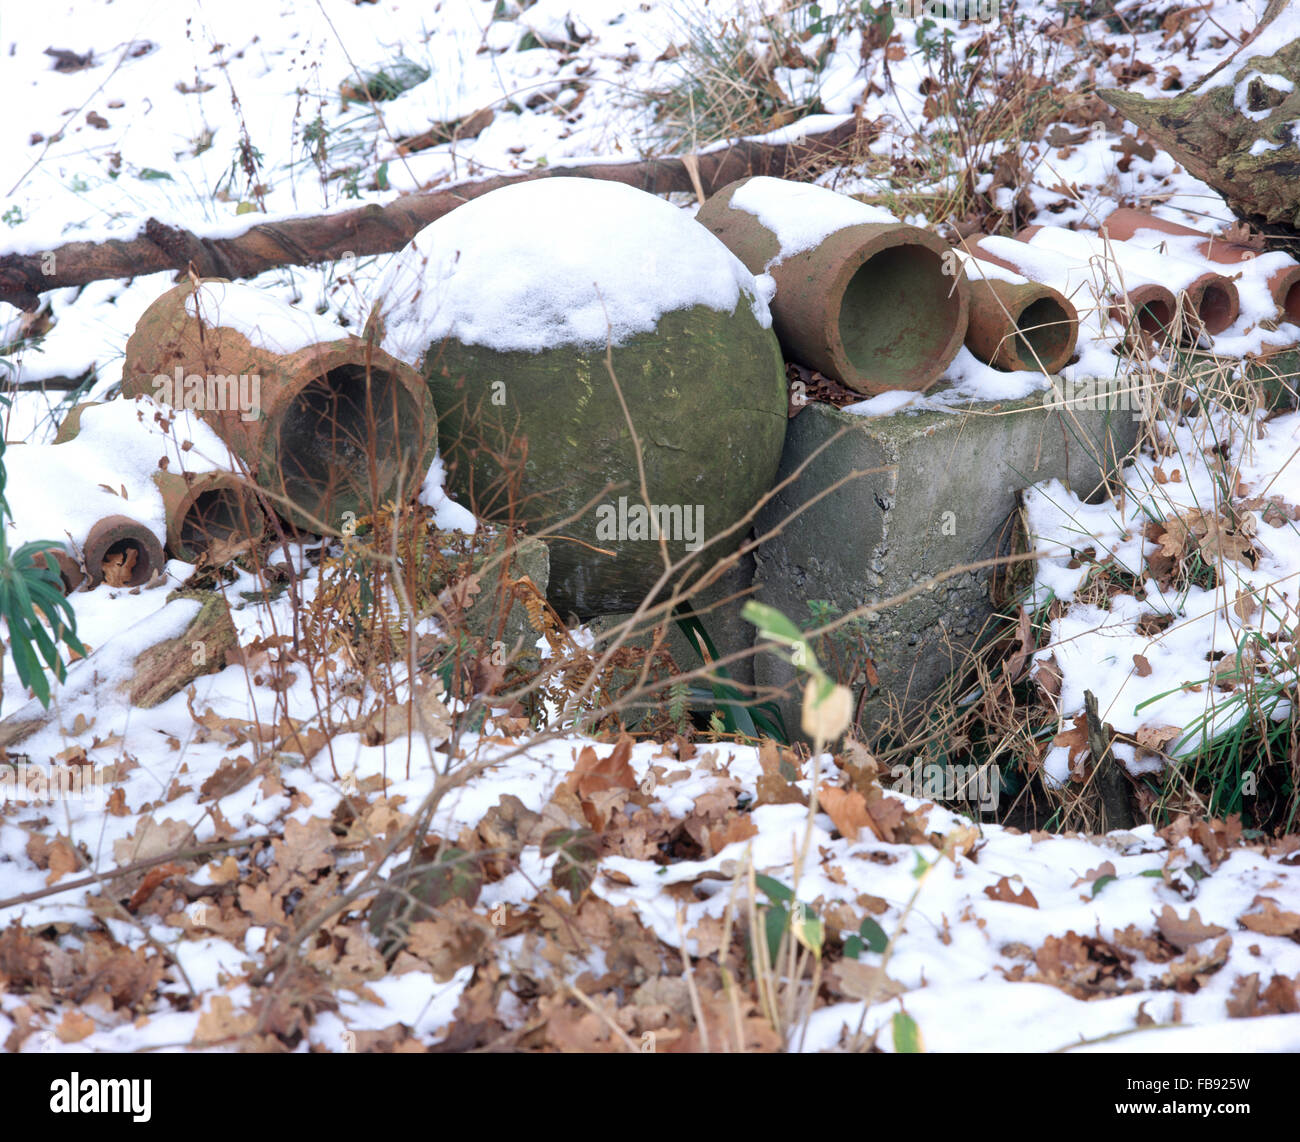 Alten Drainagerohre und eine steinerne Kugel als Ornamente in einem verschneiten Winter-Garten Stockfoto